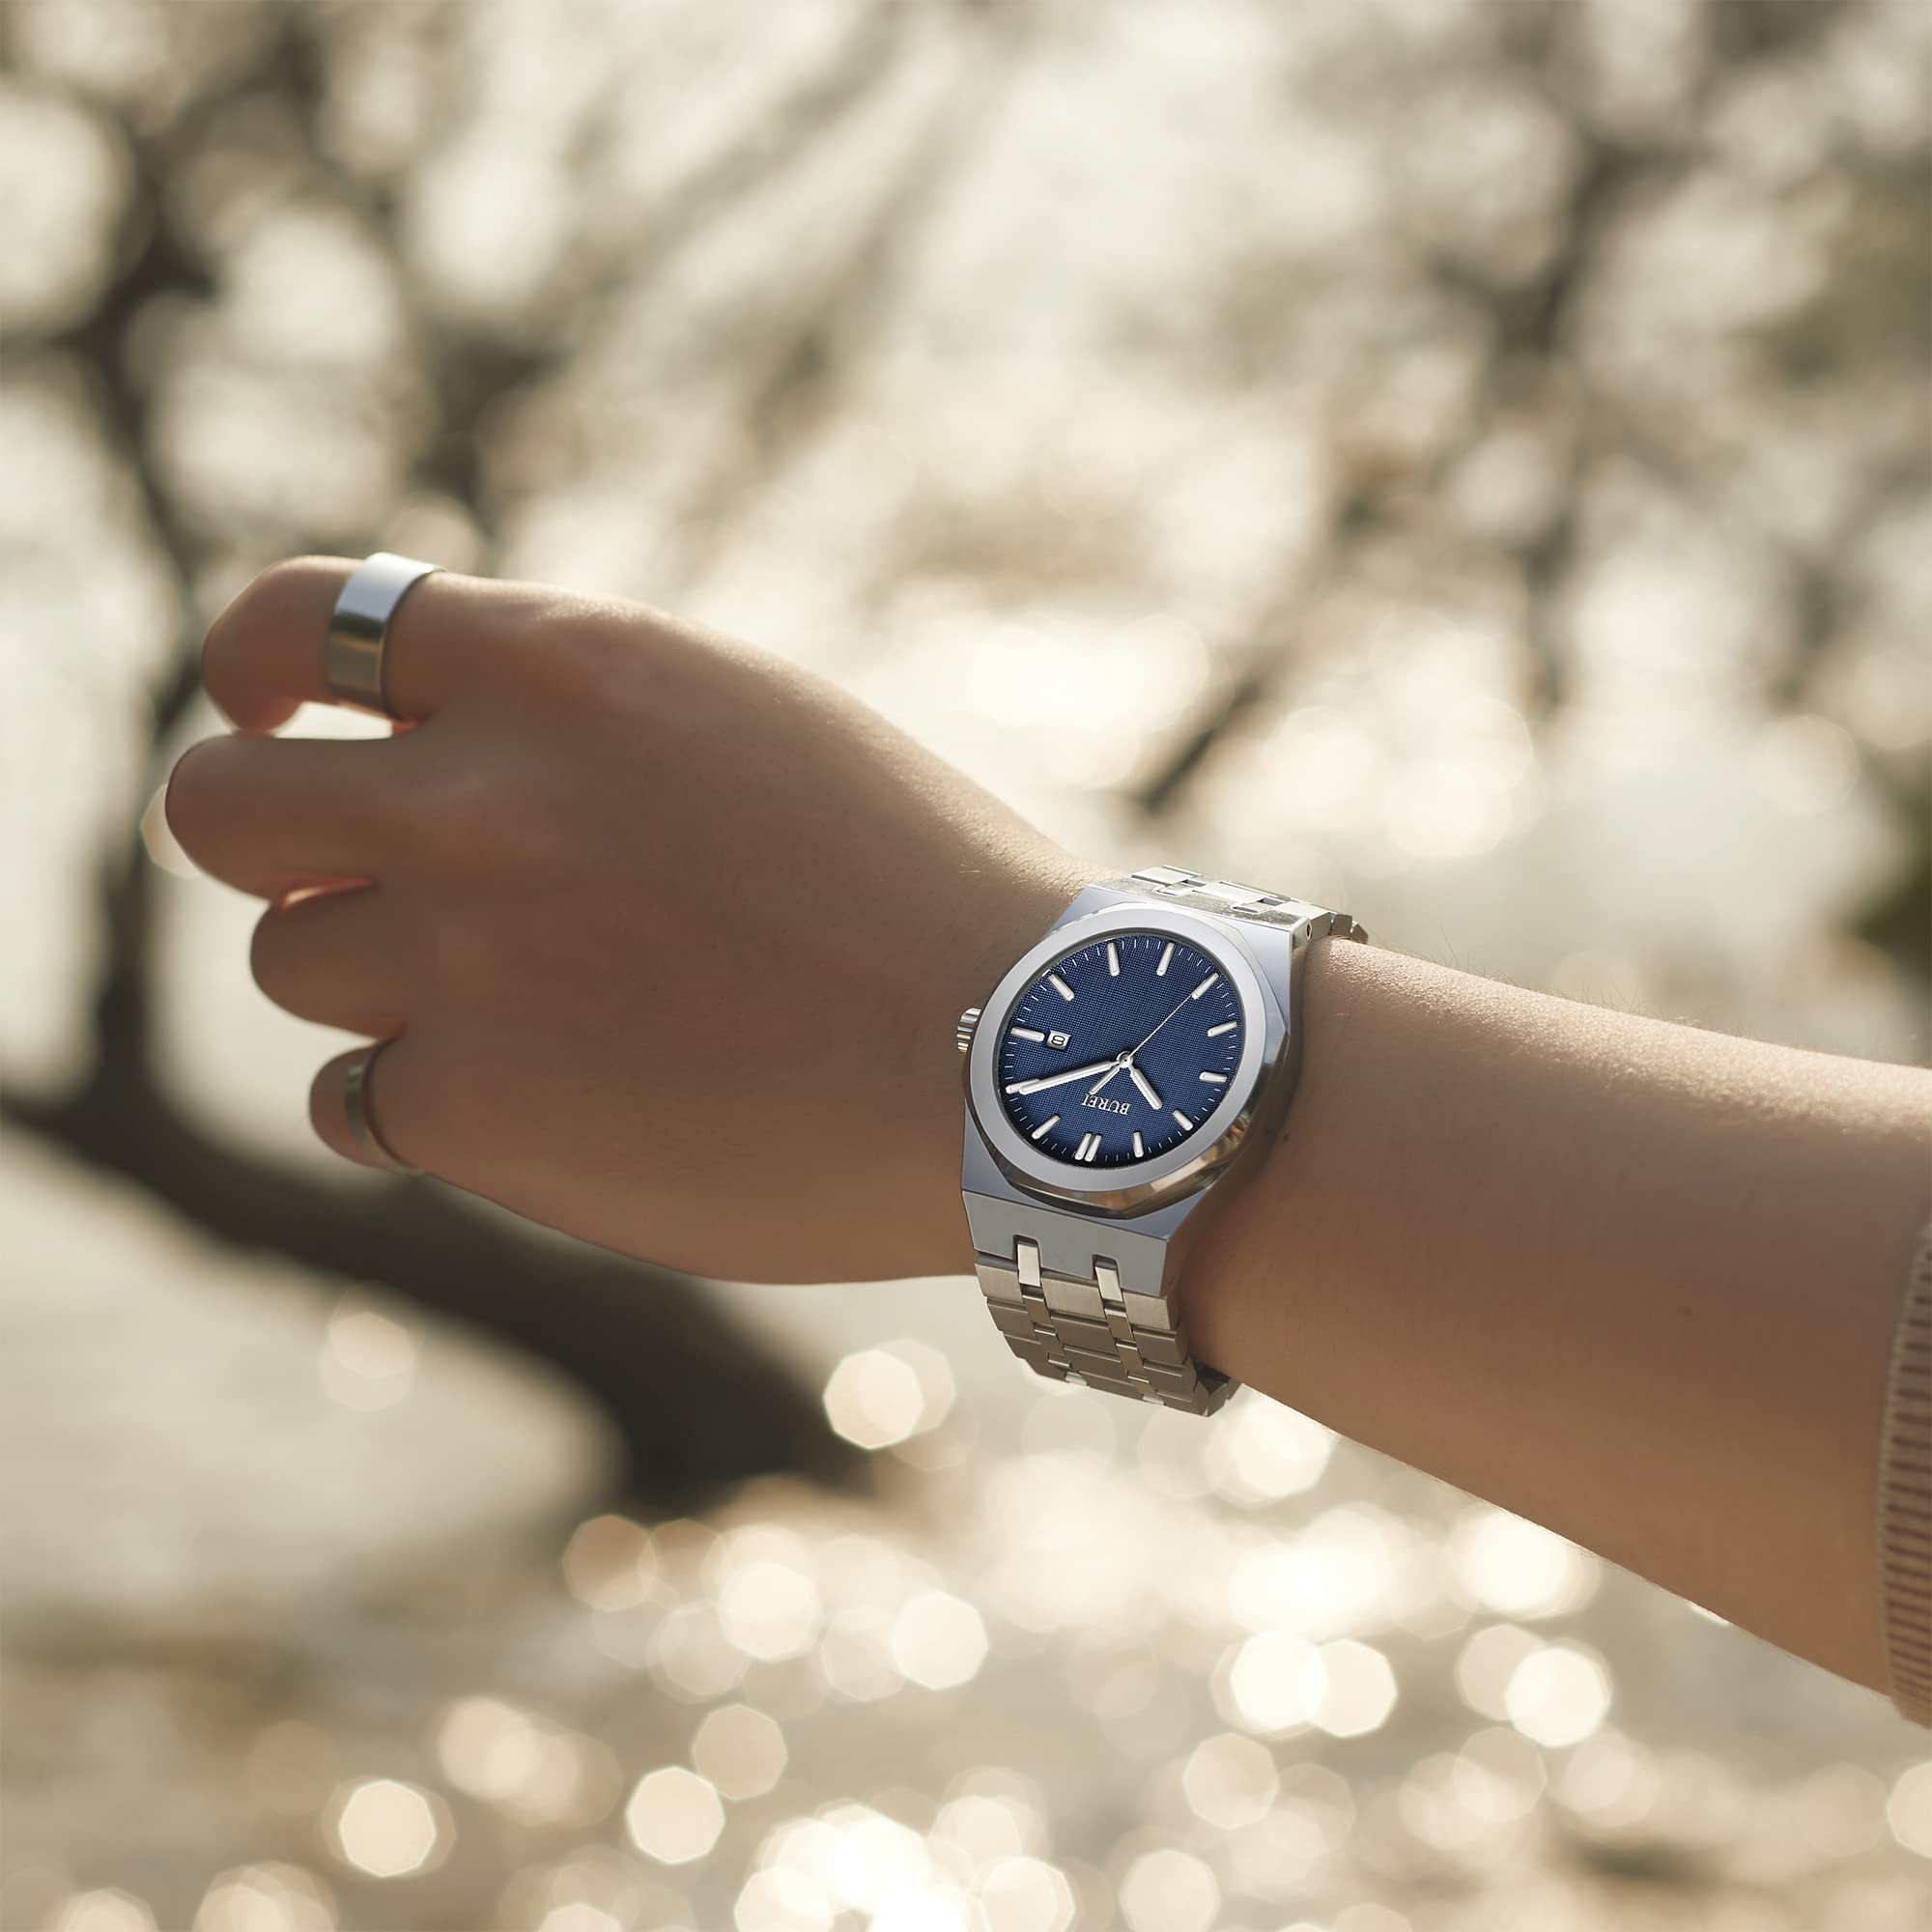 BUREI Fashion Quarzuhr für Männer Uhr Analog Datum Uhr Mit Edelstahlband Wasserdicht Klassische Uhren für Männer